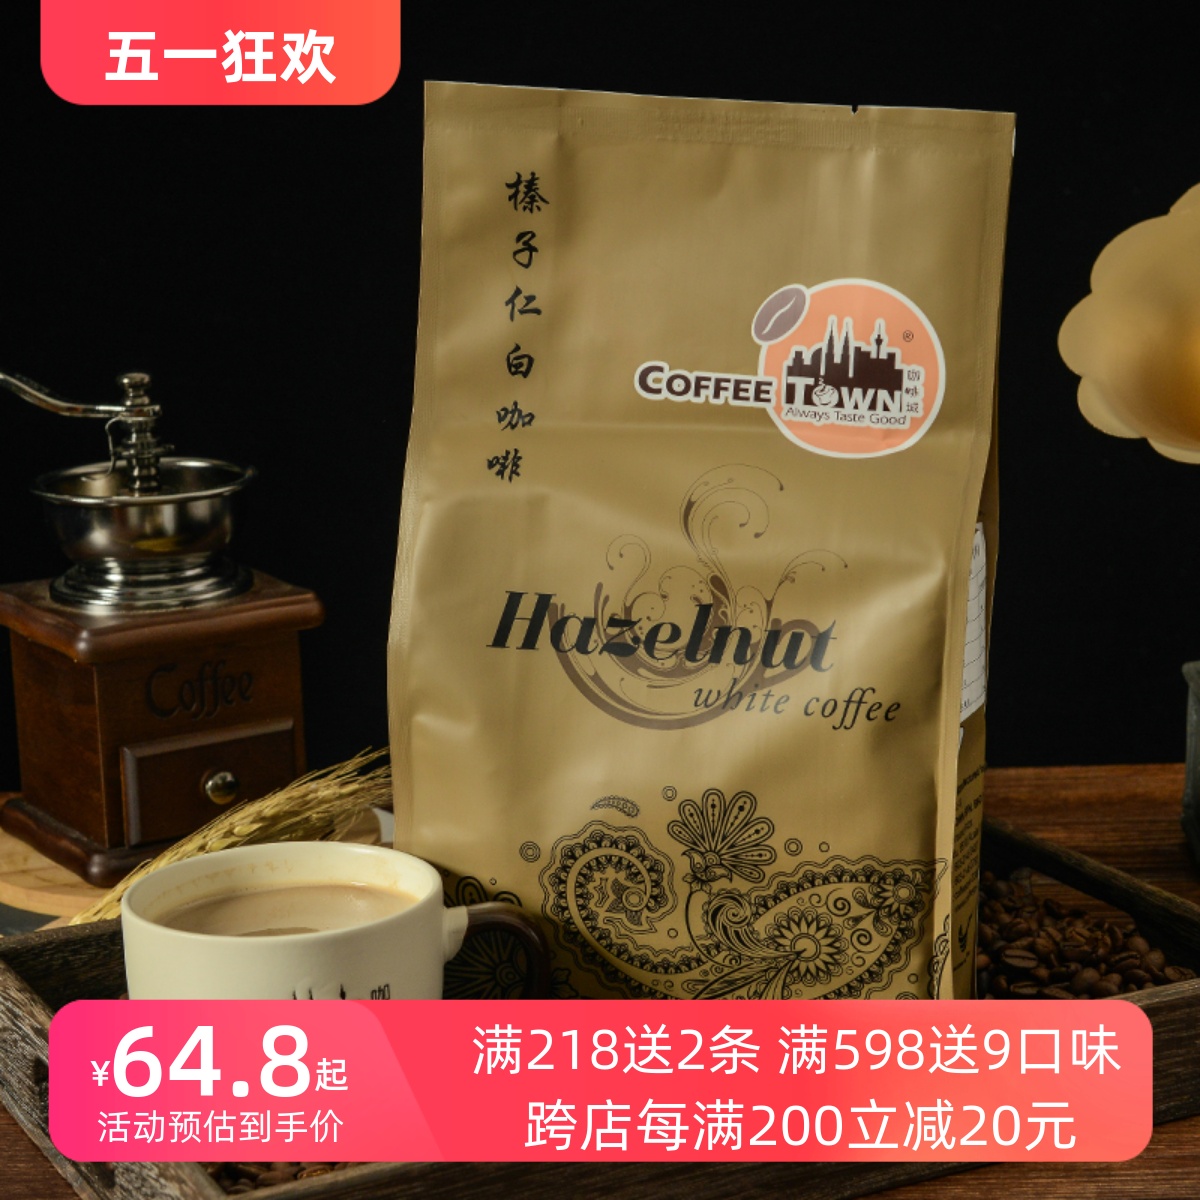 马来西亚原装进口咖啡城榛果味白咖啡榛子仁速溶咖啡粉袋装525g